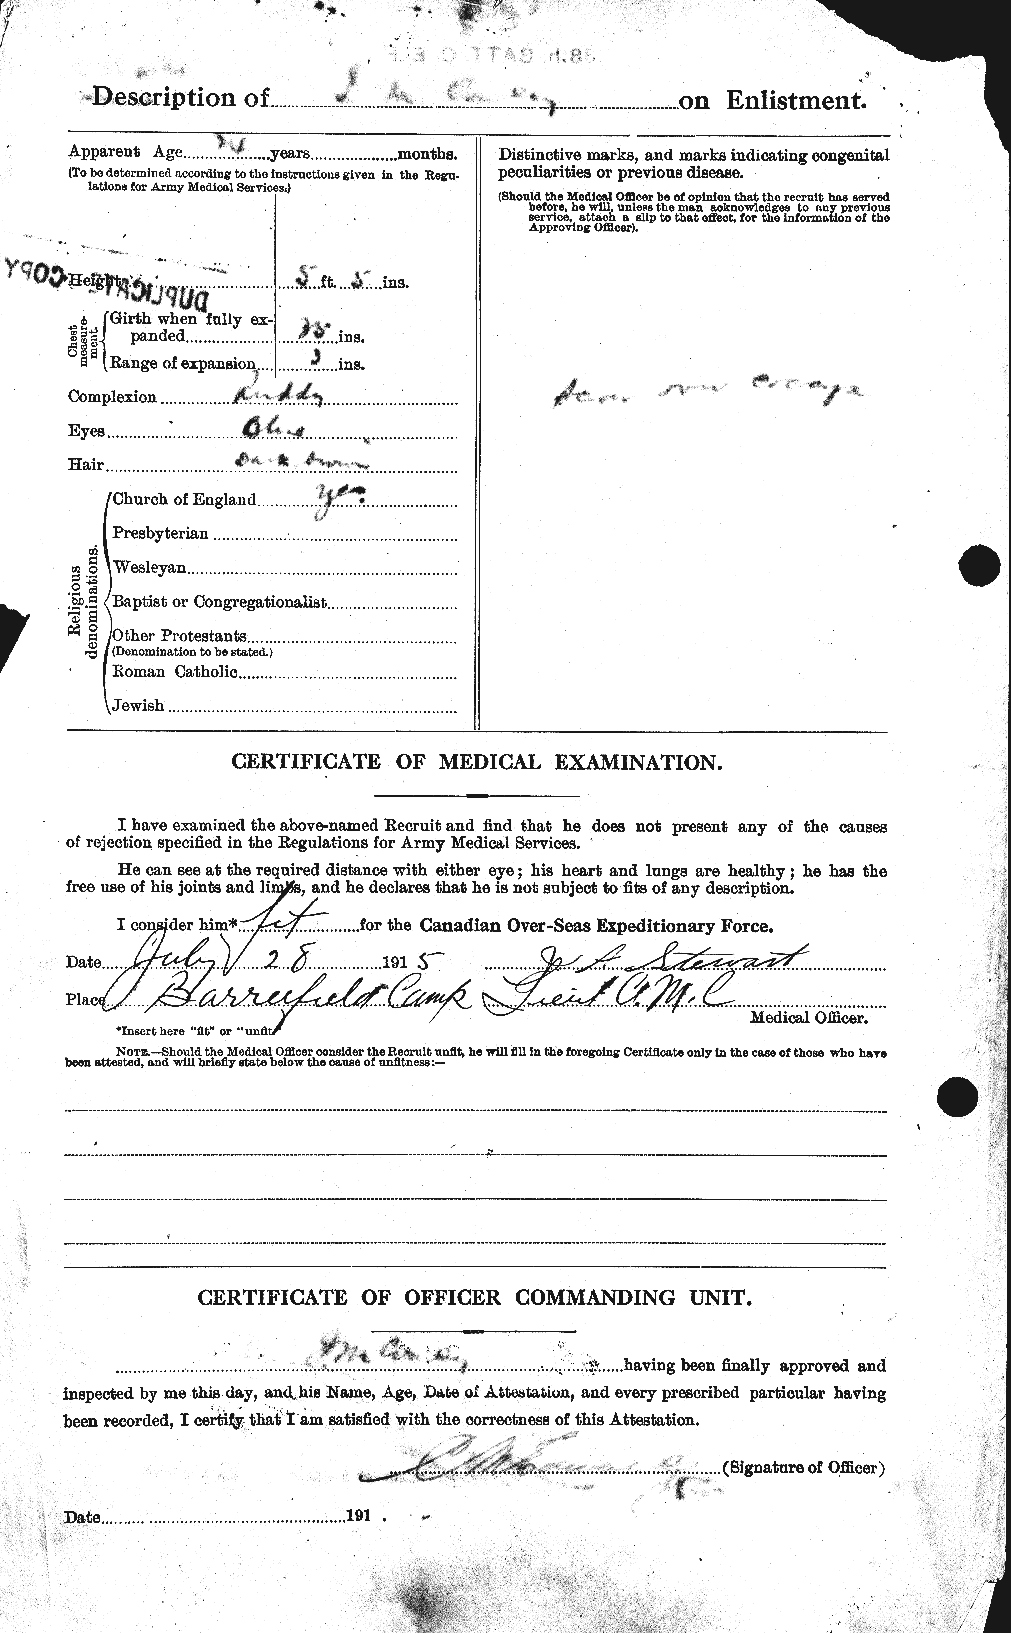 Dossiers du Personnel de la Première Guerre mondiale - CEC 067828b